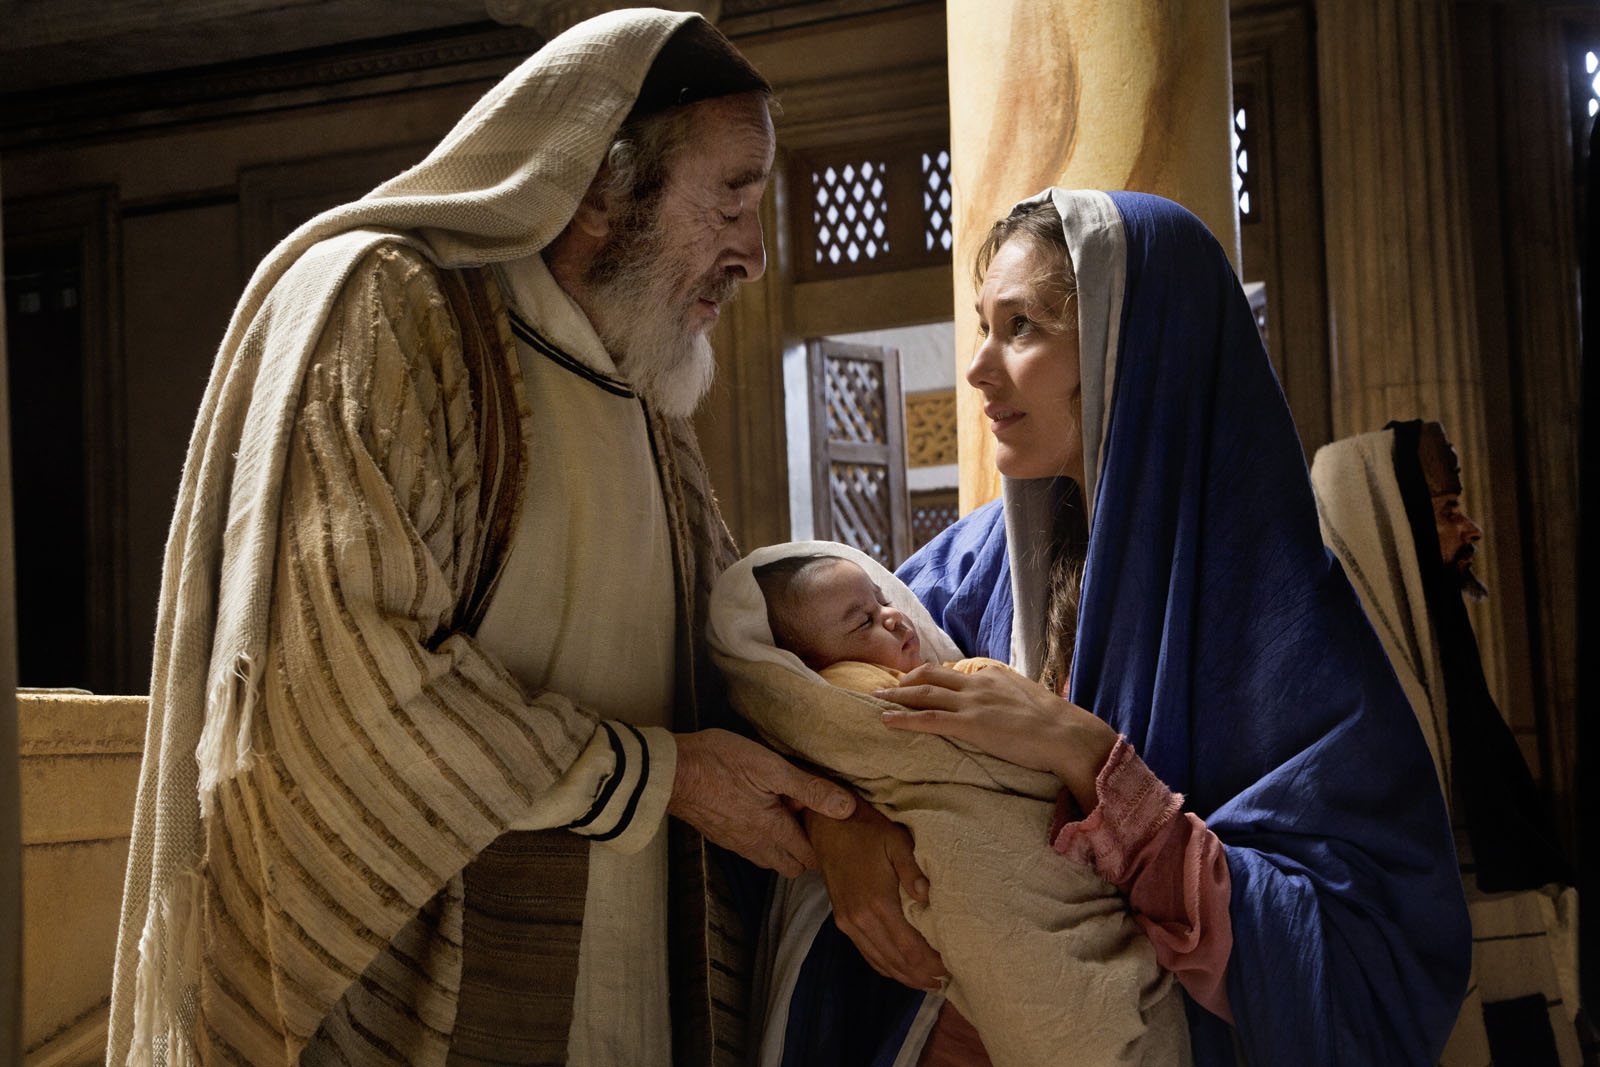 Секс Юлиан О Дате Рождения Христа